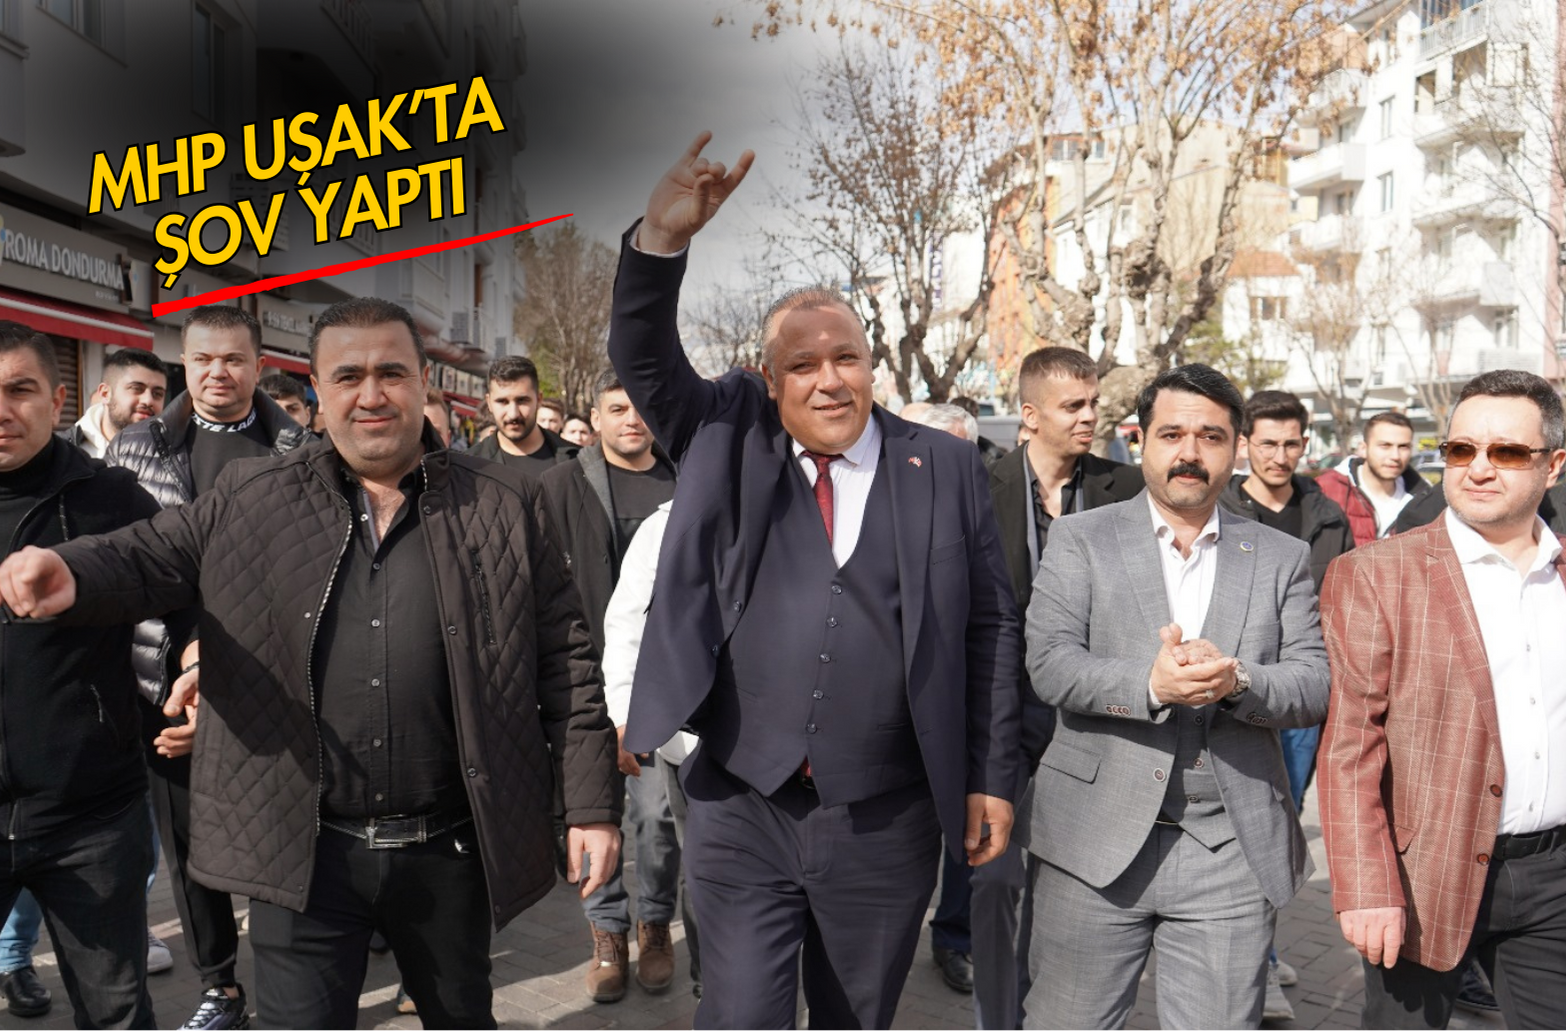 MHP Uşak’ta Gövde Gösterisi Yaptı